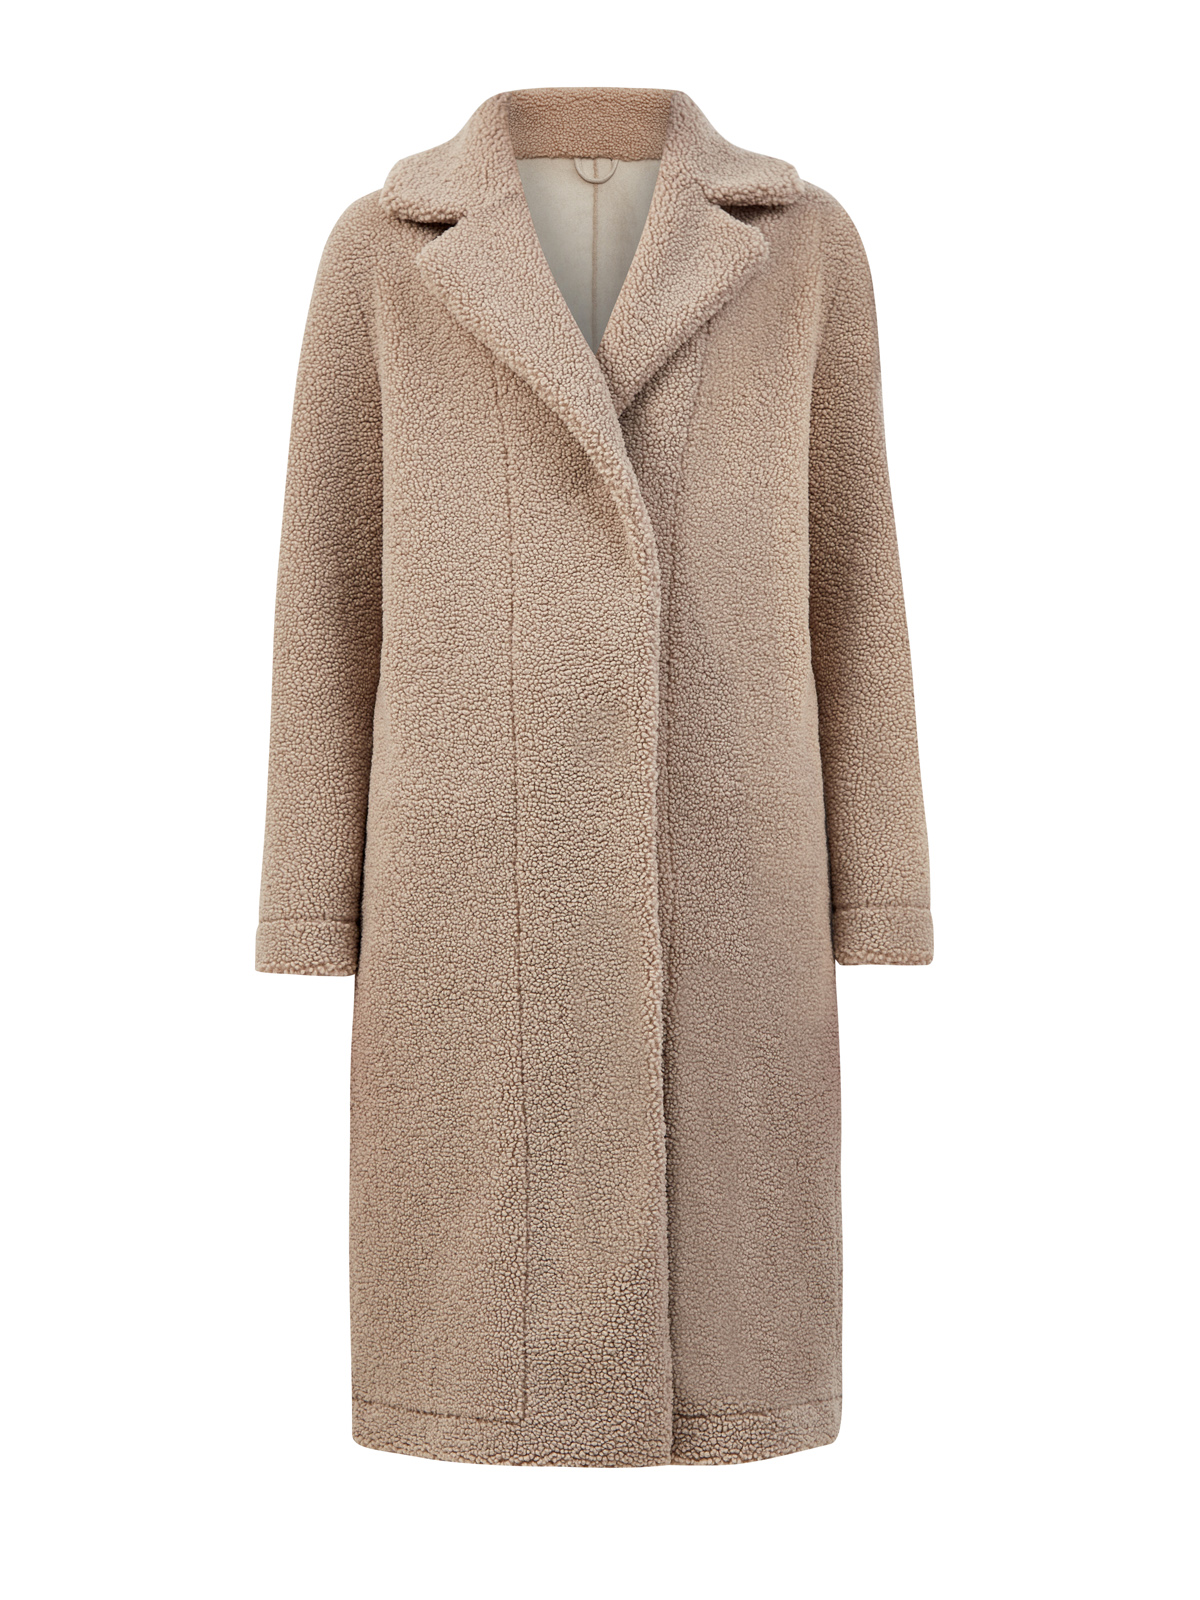 Пальто Shannon классического кроя из теплого эко-меха HETREGO, цвет бежевый, размер XL;2XL